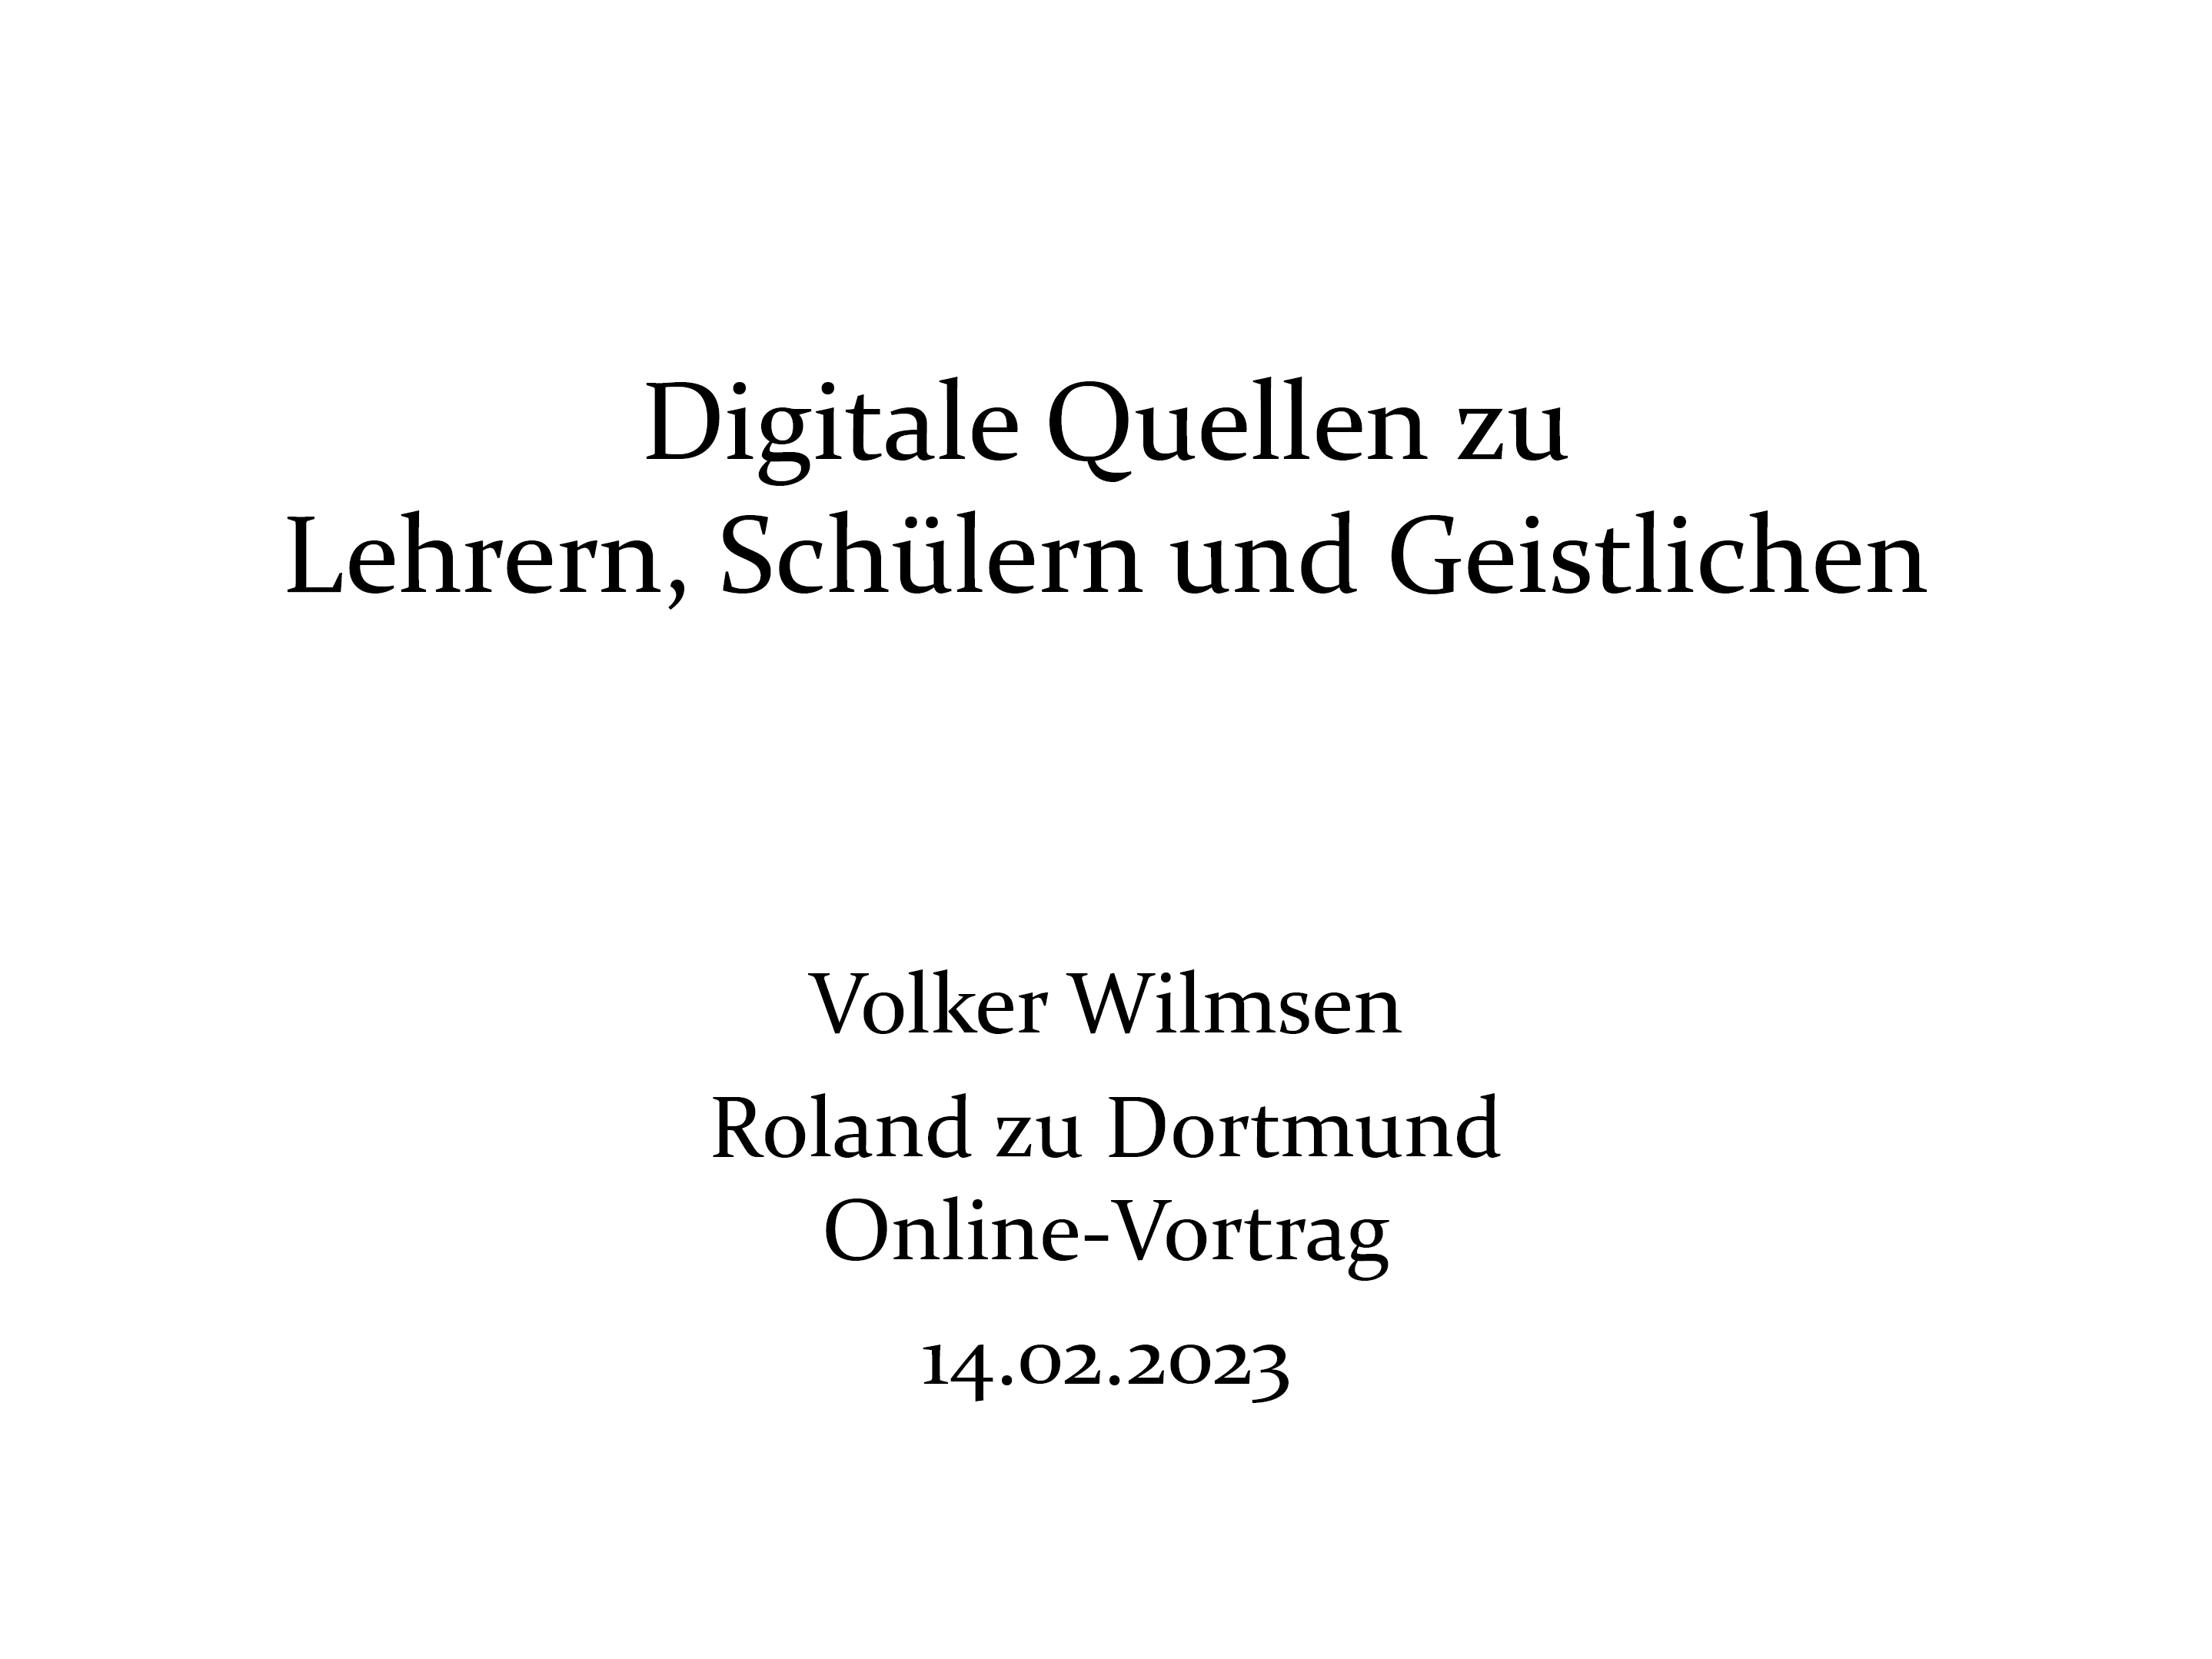 Wilmsen (2023), Digitale Quellen zu Schülern, Lehrern und Geistlichen